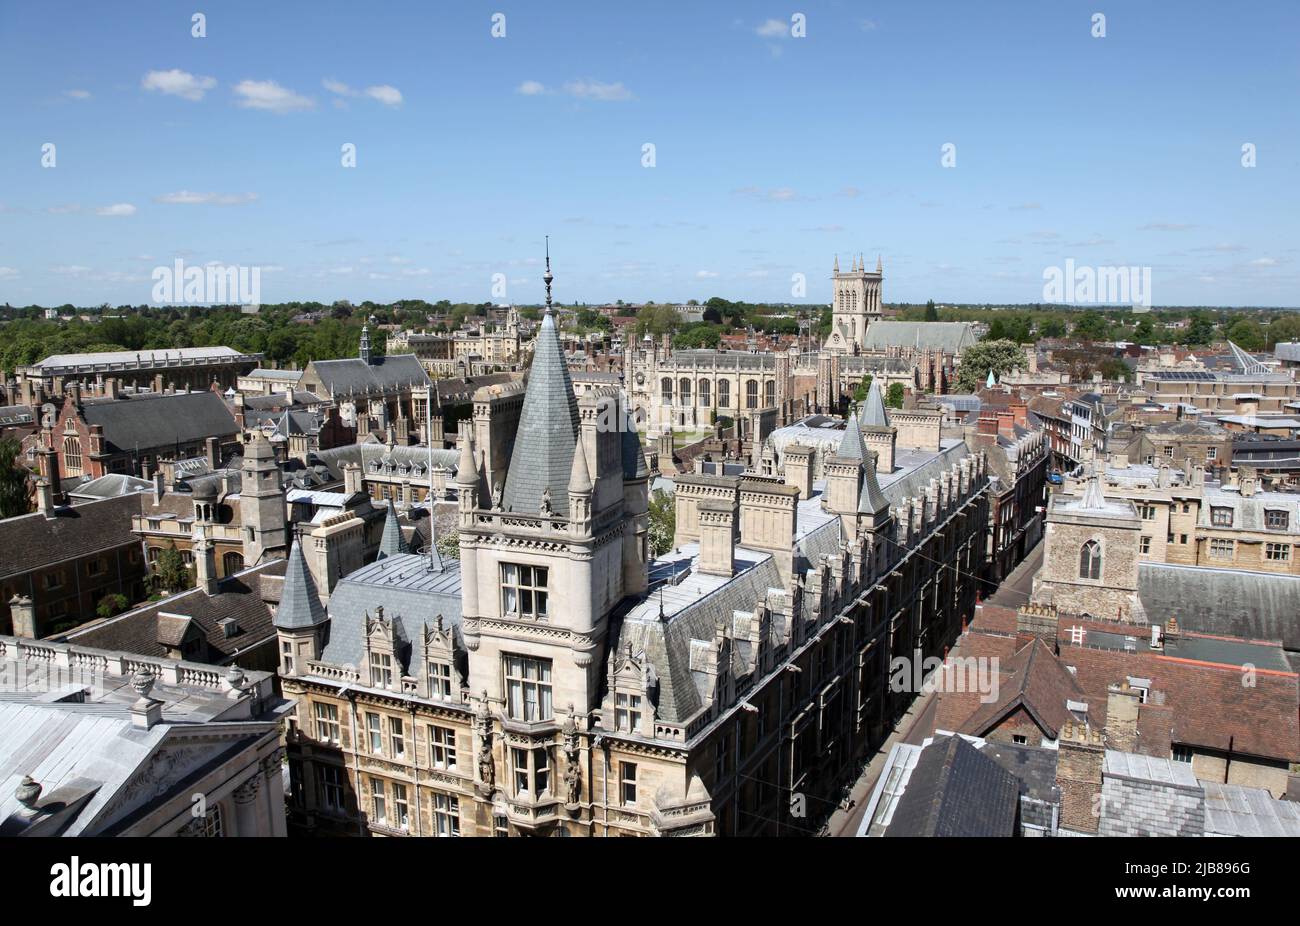 Une vue aérienne des bâtiments historiques de Cambridge - Cambridge - Angleterre Banque D'Images